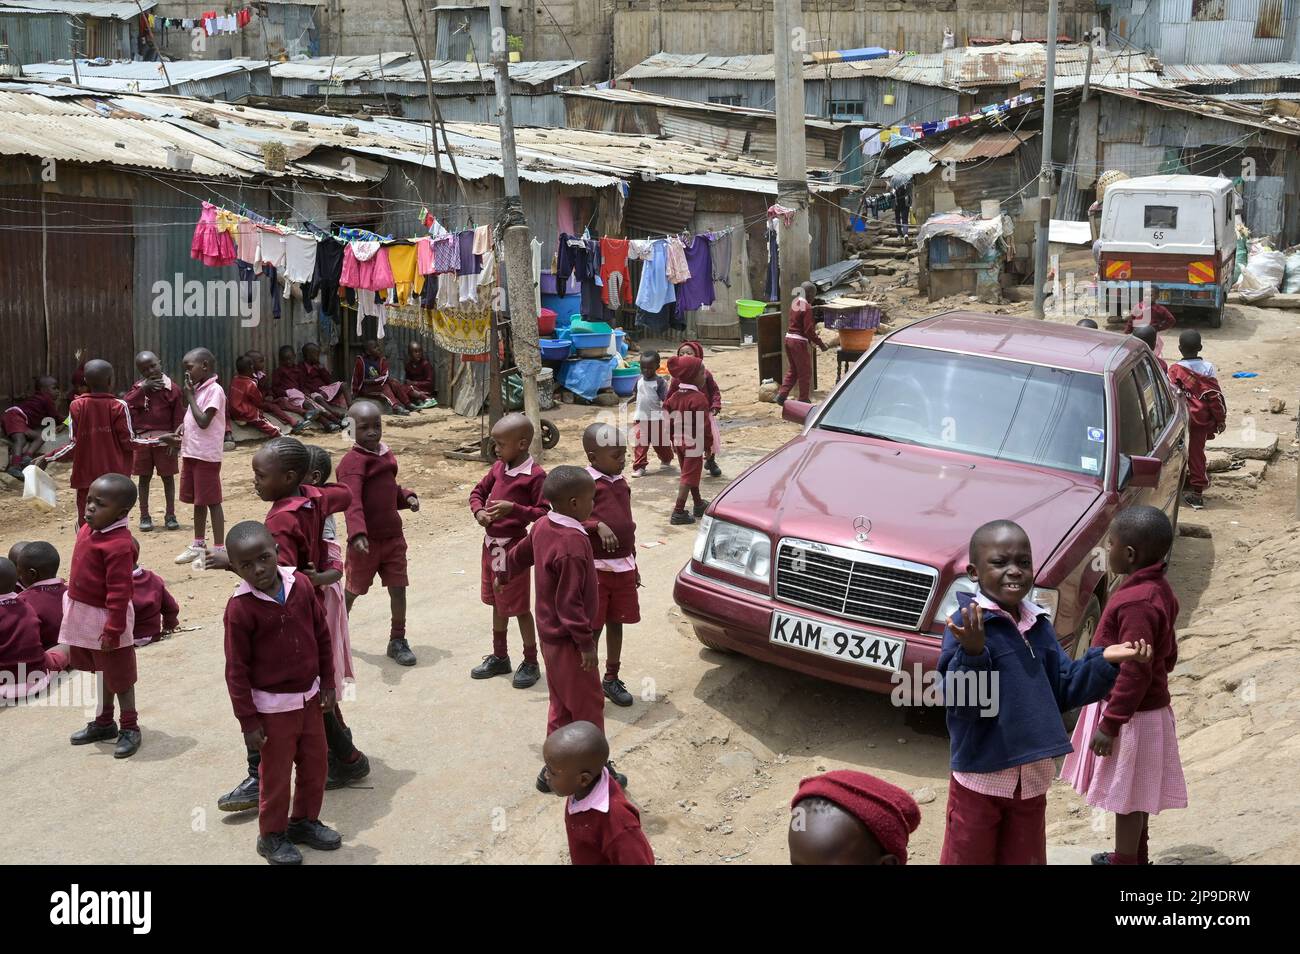 KENYA, Nairobi, Mathare Slum, contrast school children and used Mercedes Benz car from Europe / KENIA, Nairobi, Stadtteil Mathare, Slum, Kontrast Schulkinder und gebrauchter Mercedes Benz aus Europa Stock Photo